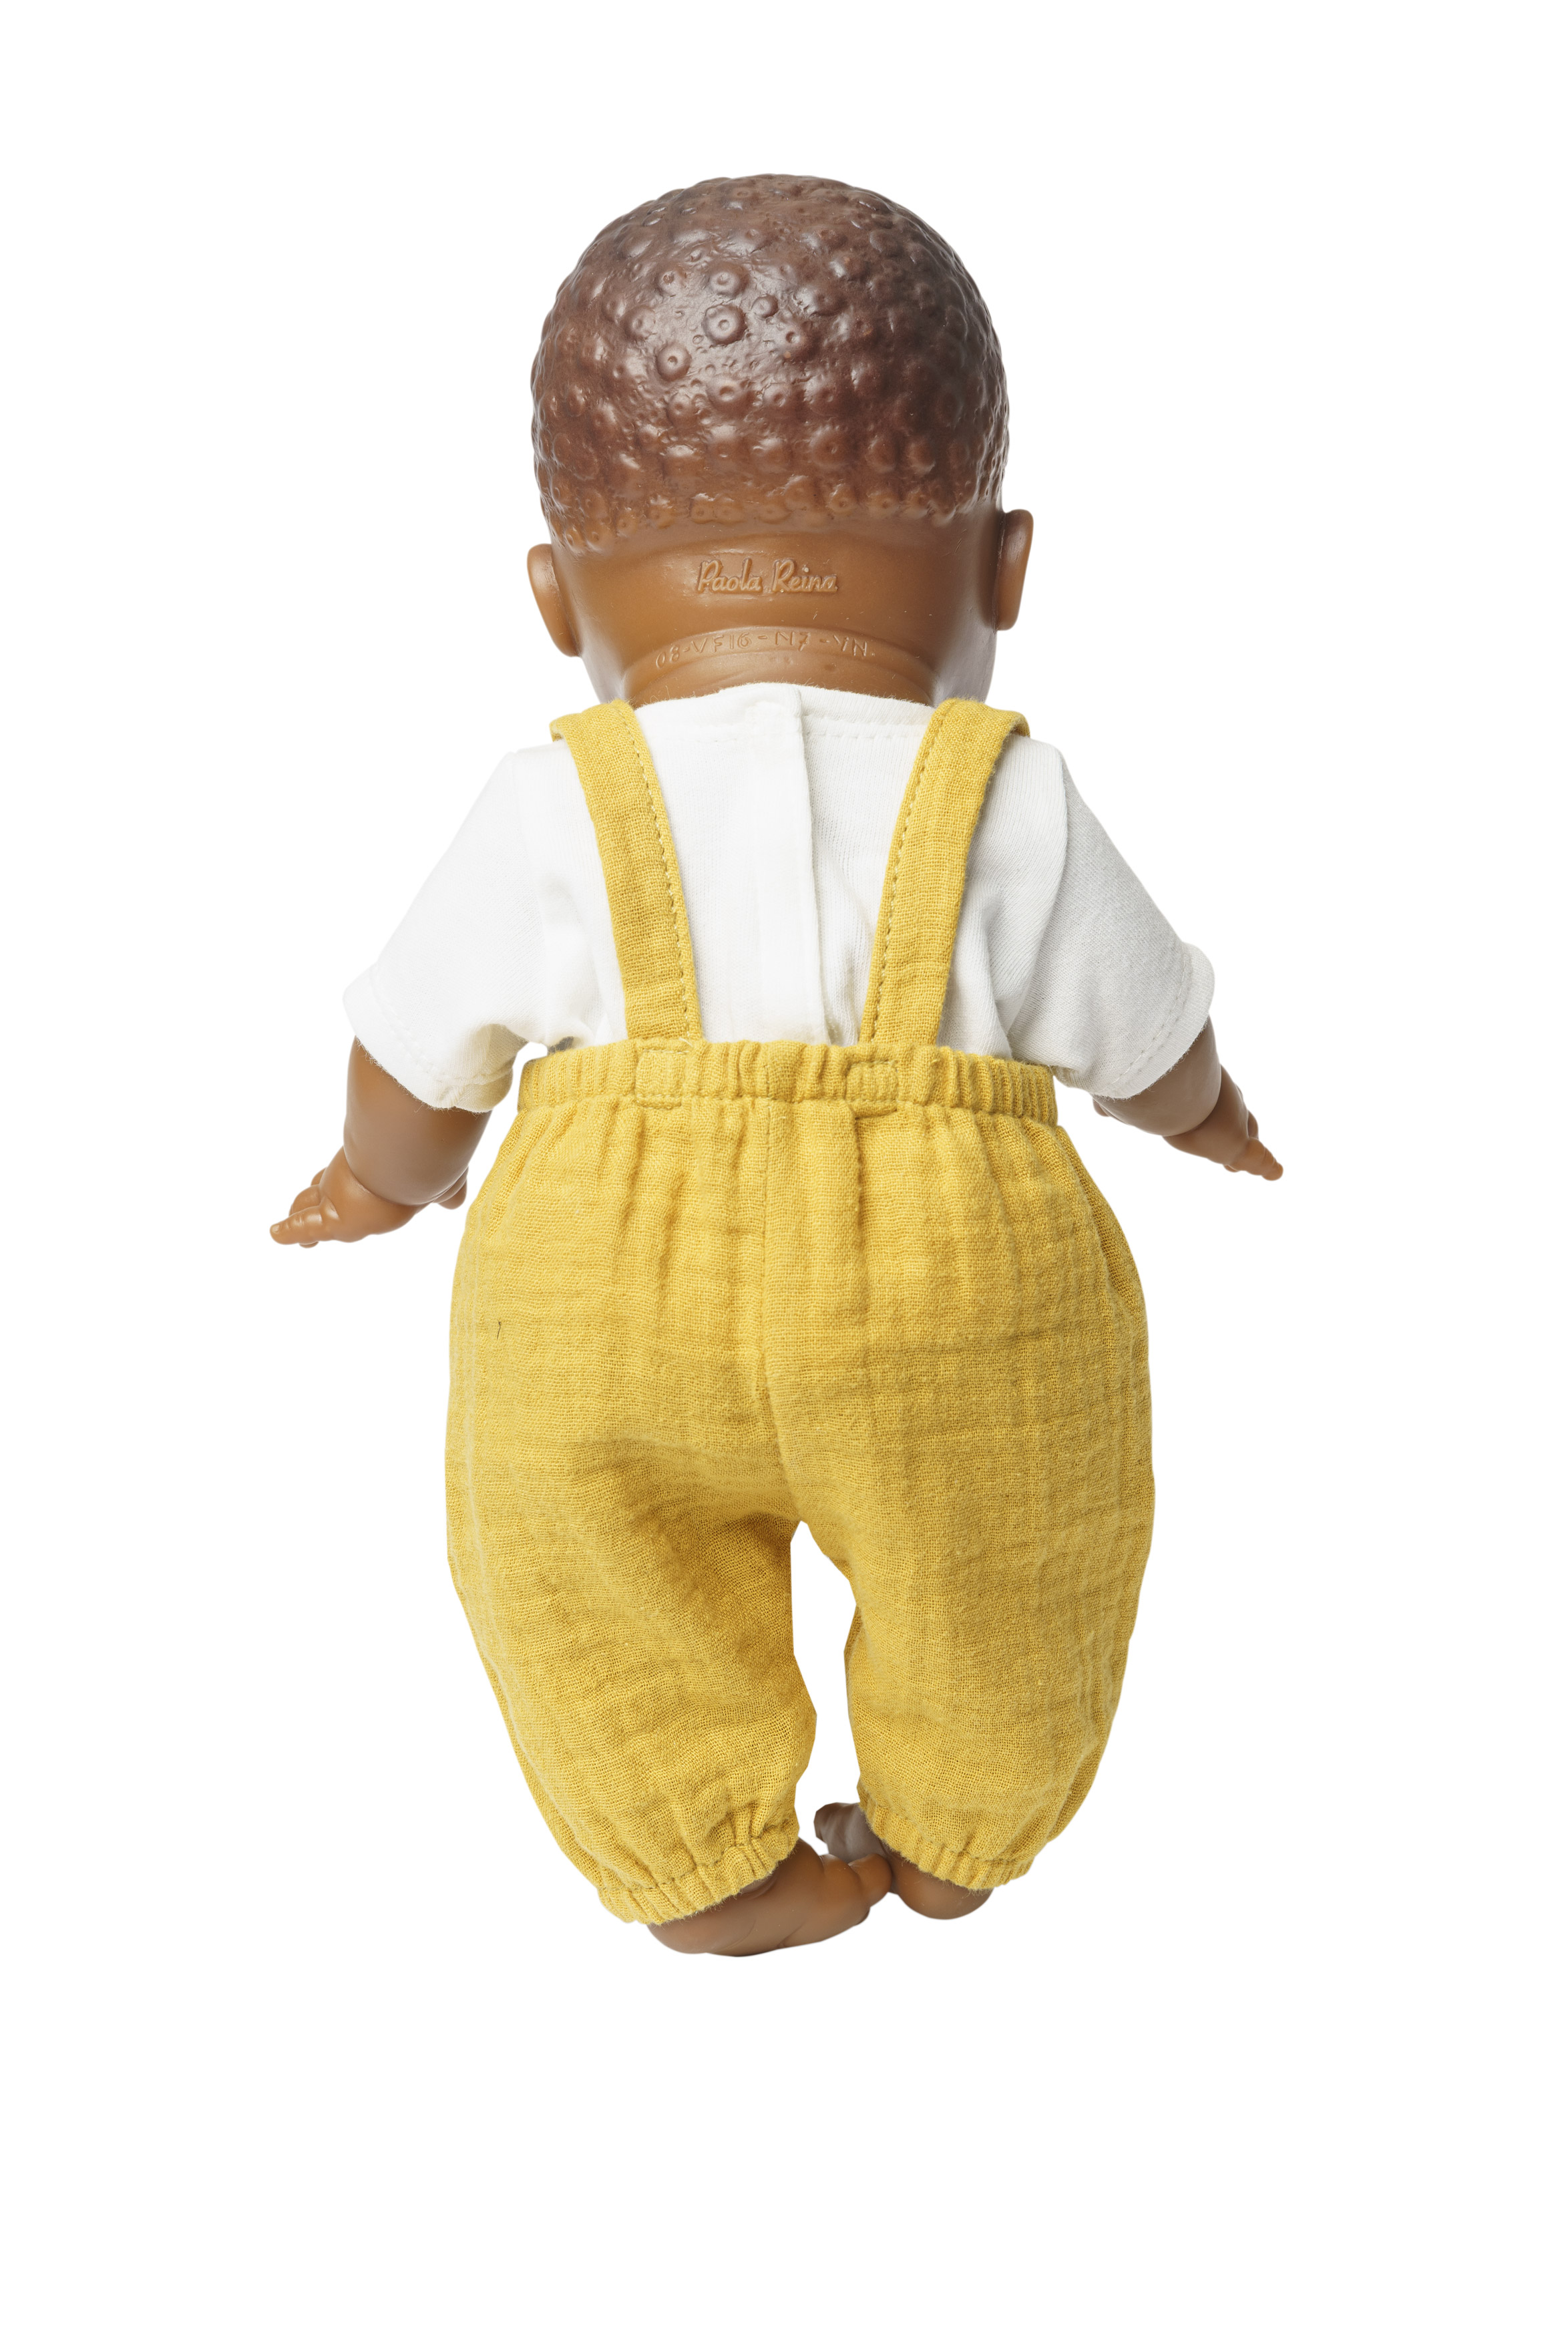 Puppen-Latzhose aus 100 % Bio-Baumwolle, honiggelb, mit weißem T-Shirt, 2-teilig, Gr. 35-45 cm